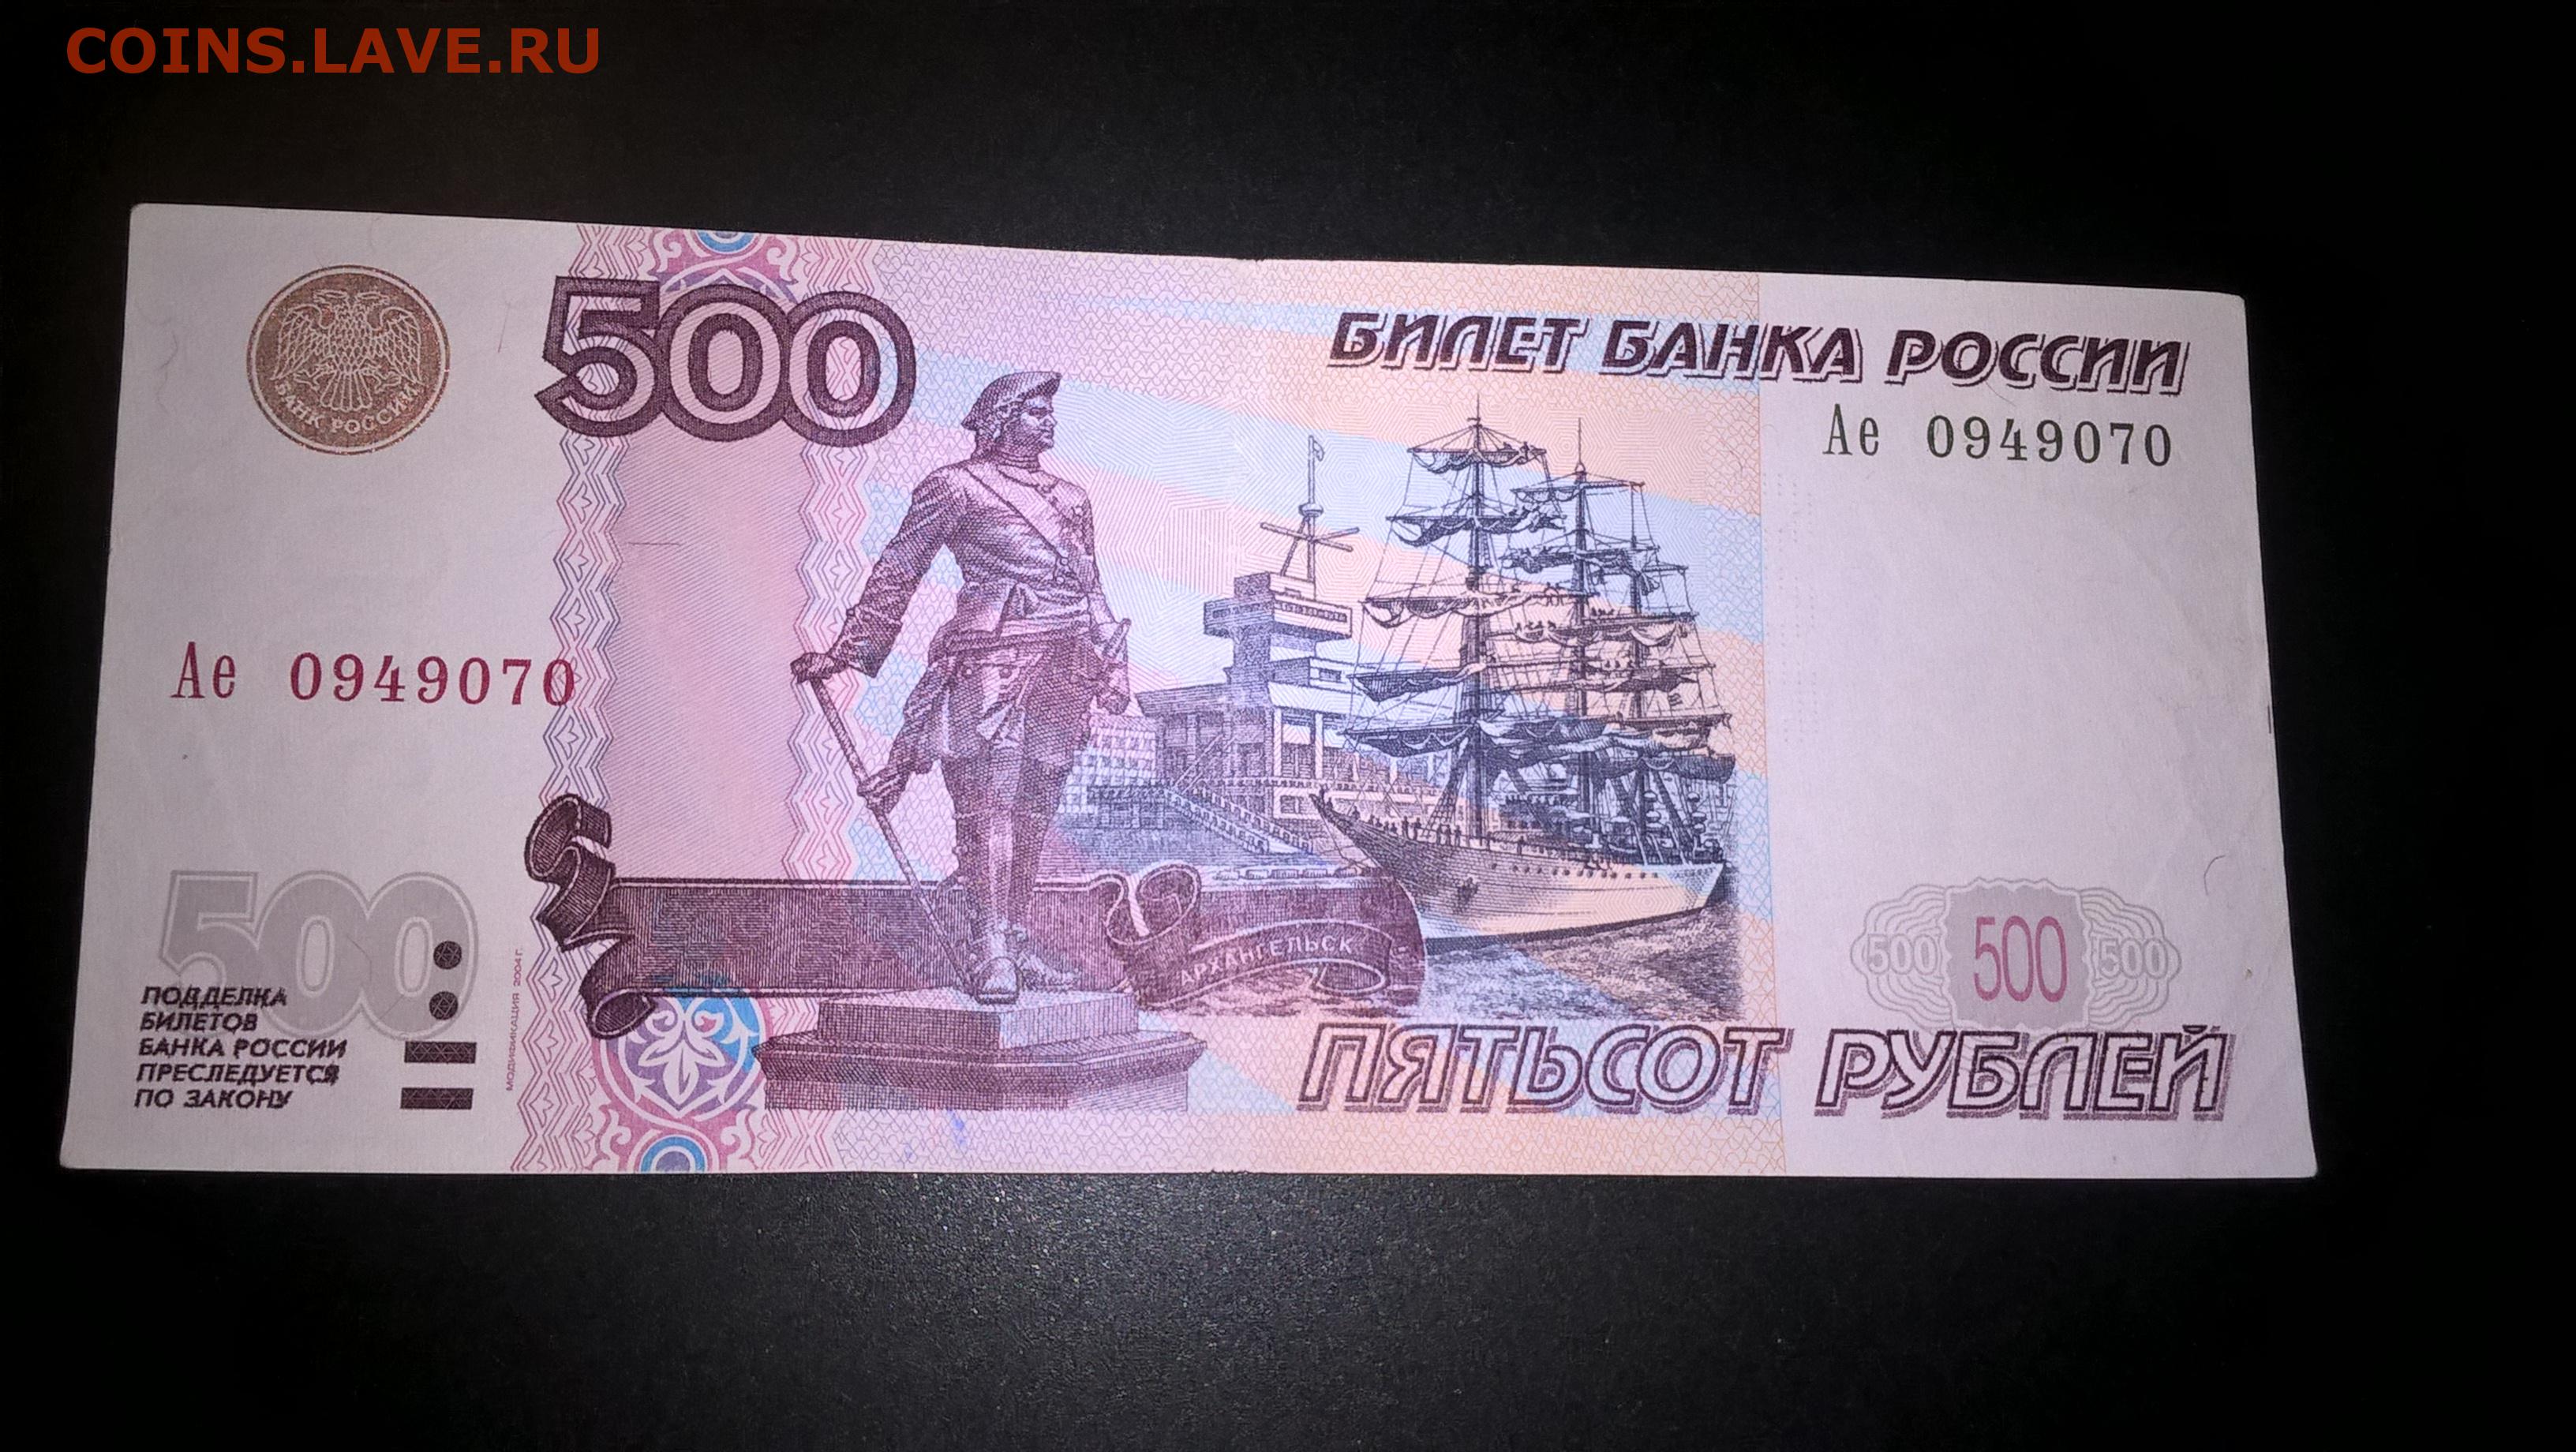 500 рублей в декабре. 500 Рублей 1997. Билет банка России 500 рублей. Пятьсот рублей 1997. Банкноты с автомобилями.